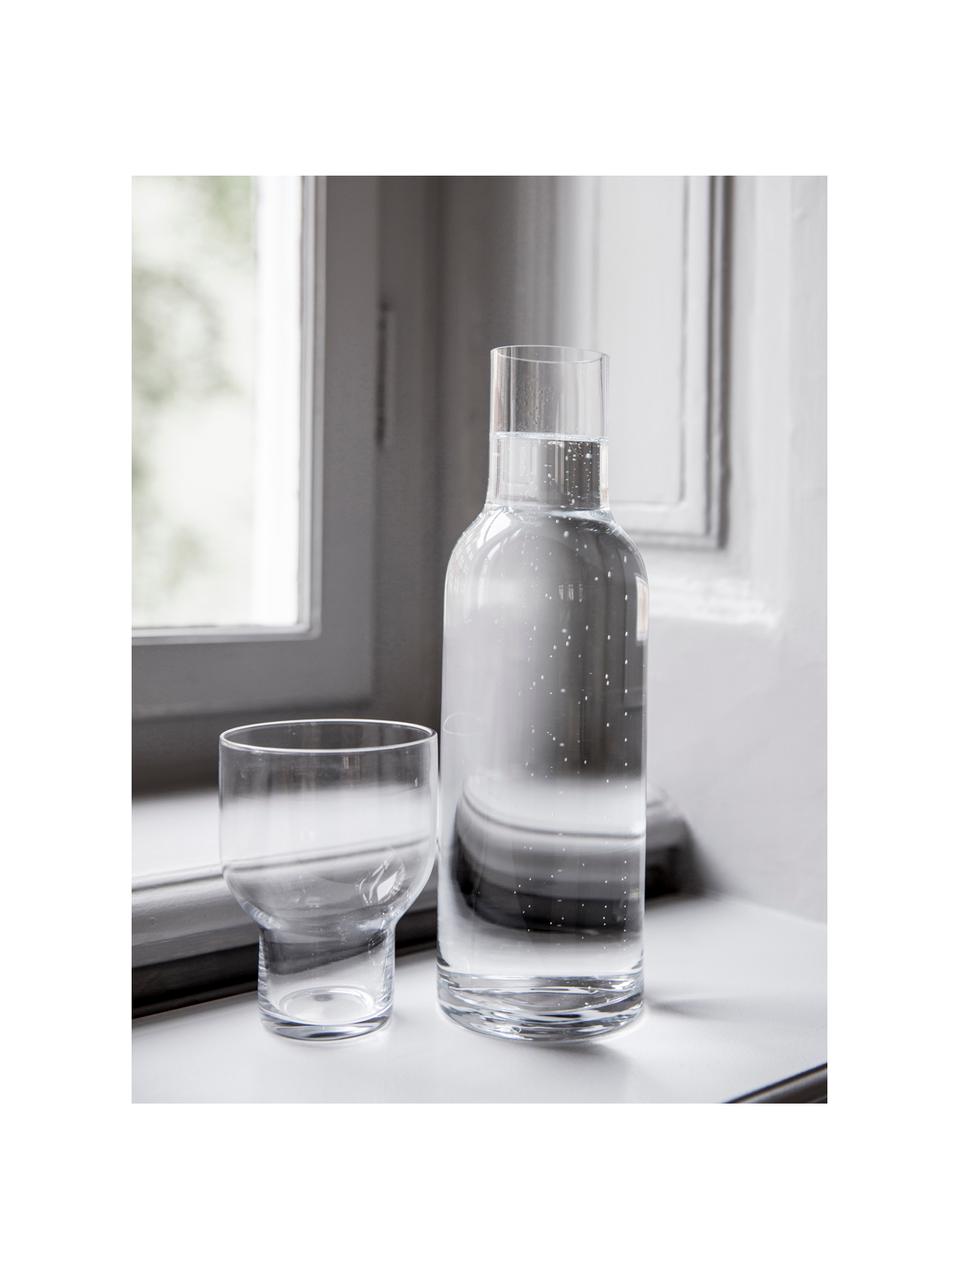 Bottiglia in vetro trasparente - 1 litro.